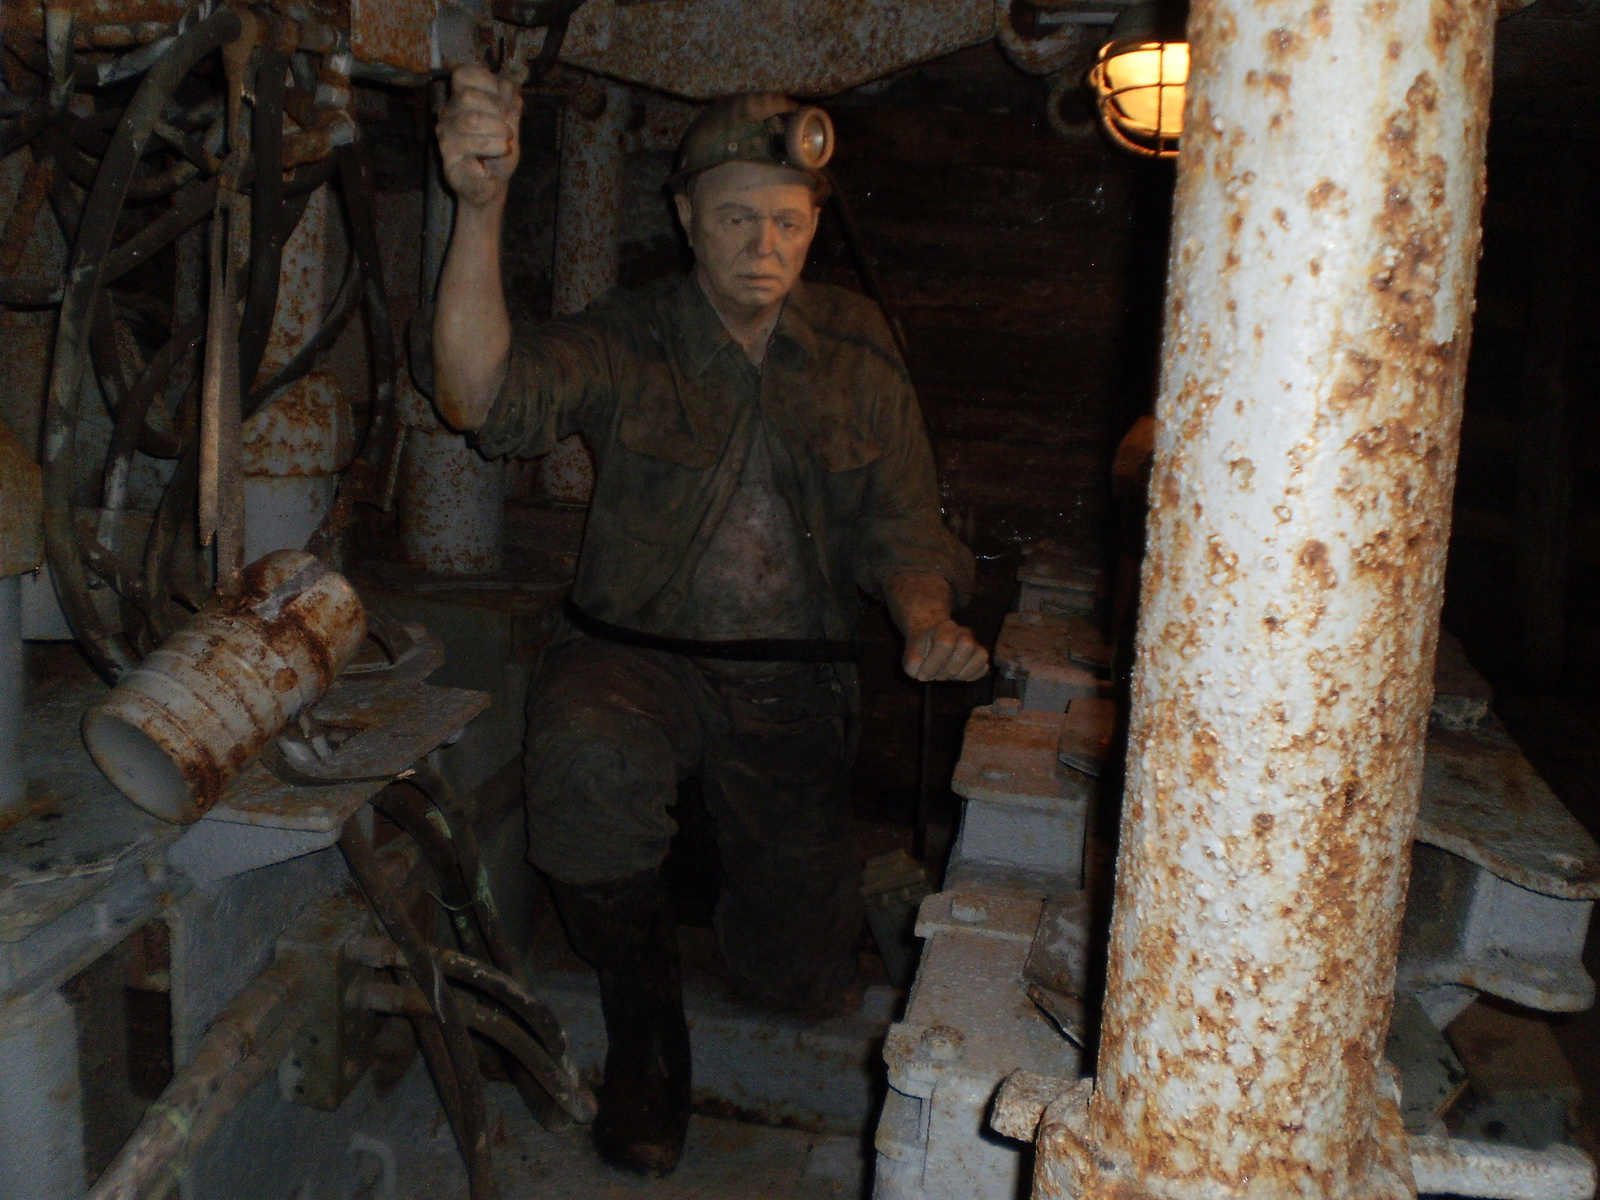 35: kőfejtő gép mellett dolgozó bányász